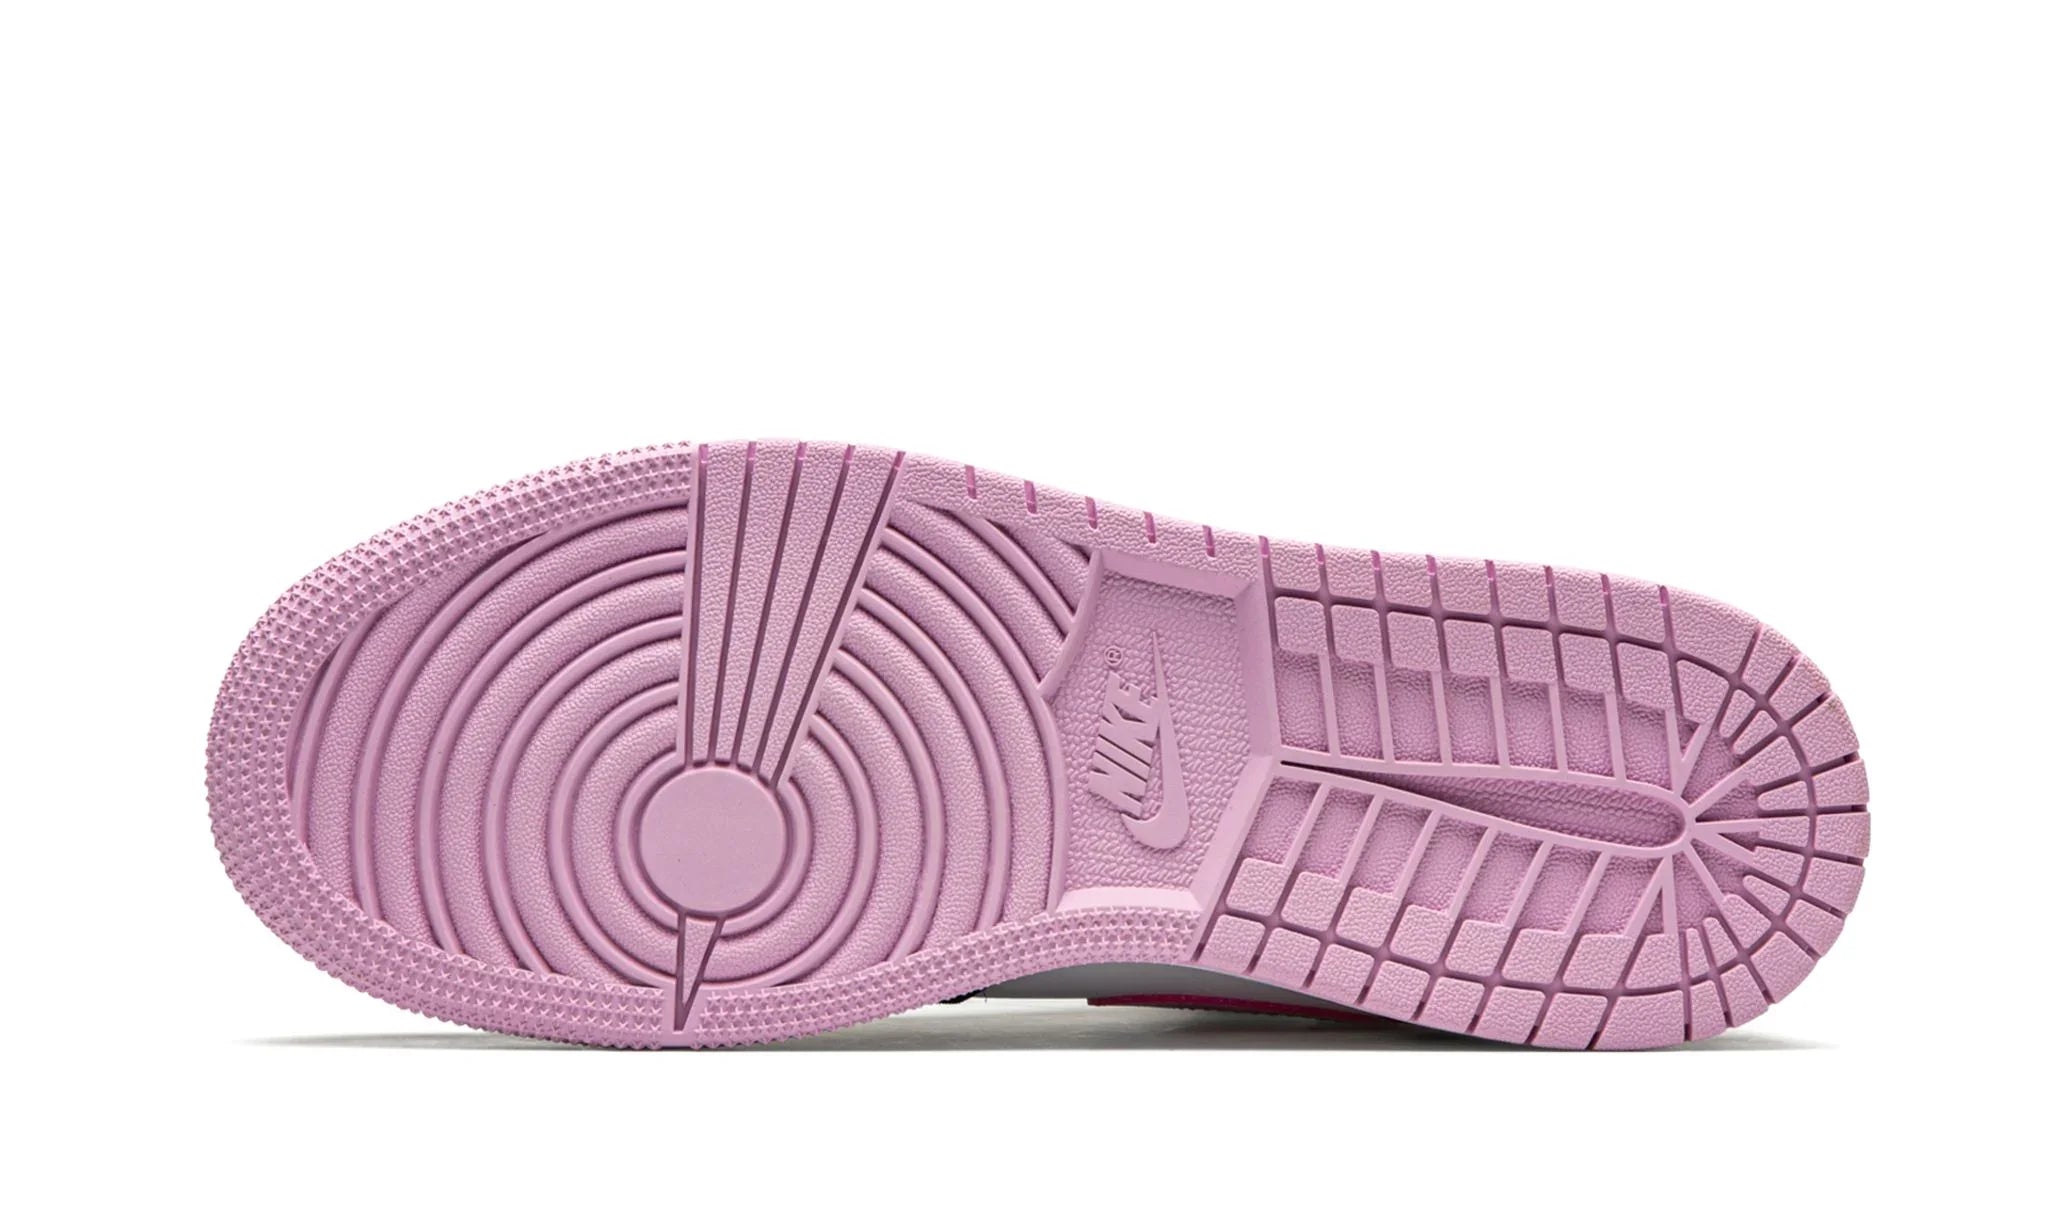 Jordan 1 Mid "Arctic Pink" - 555112-103 - Sneakers